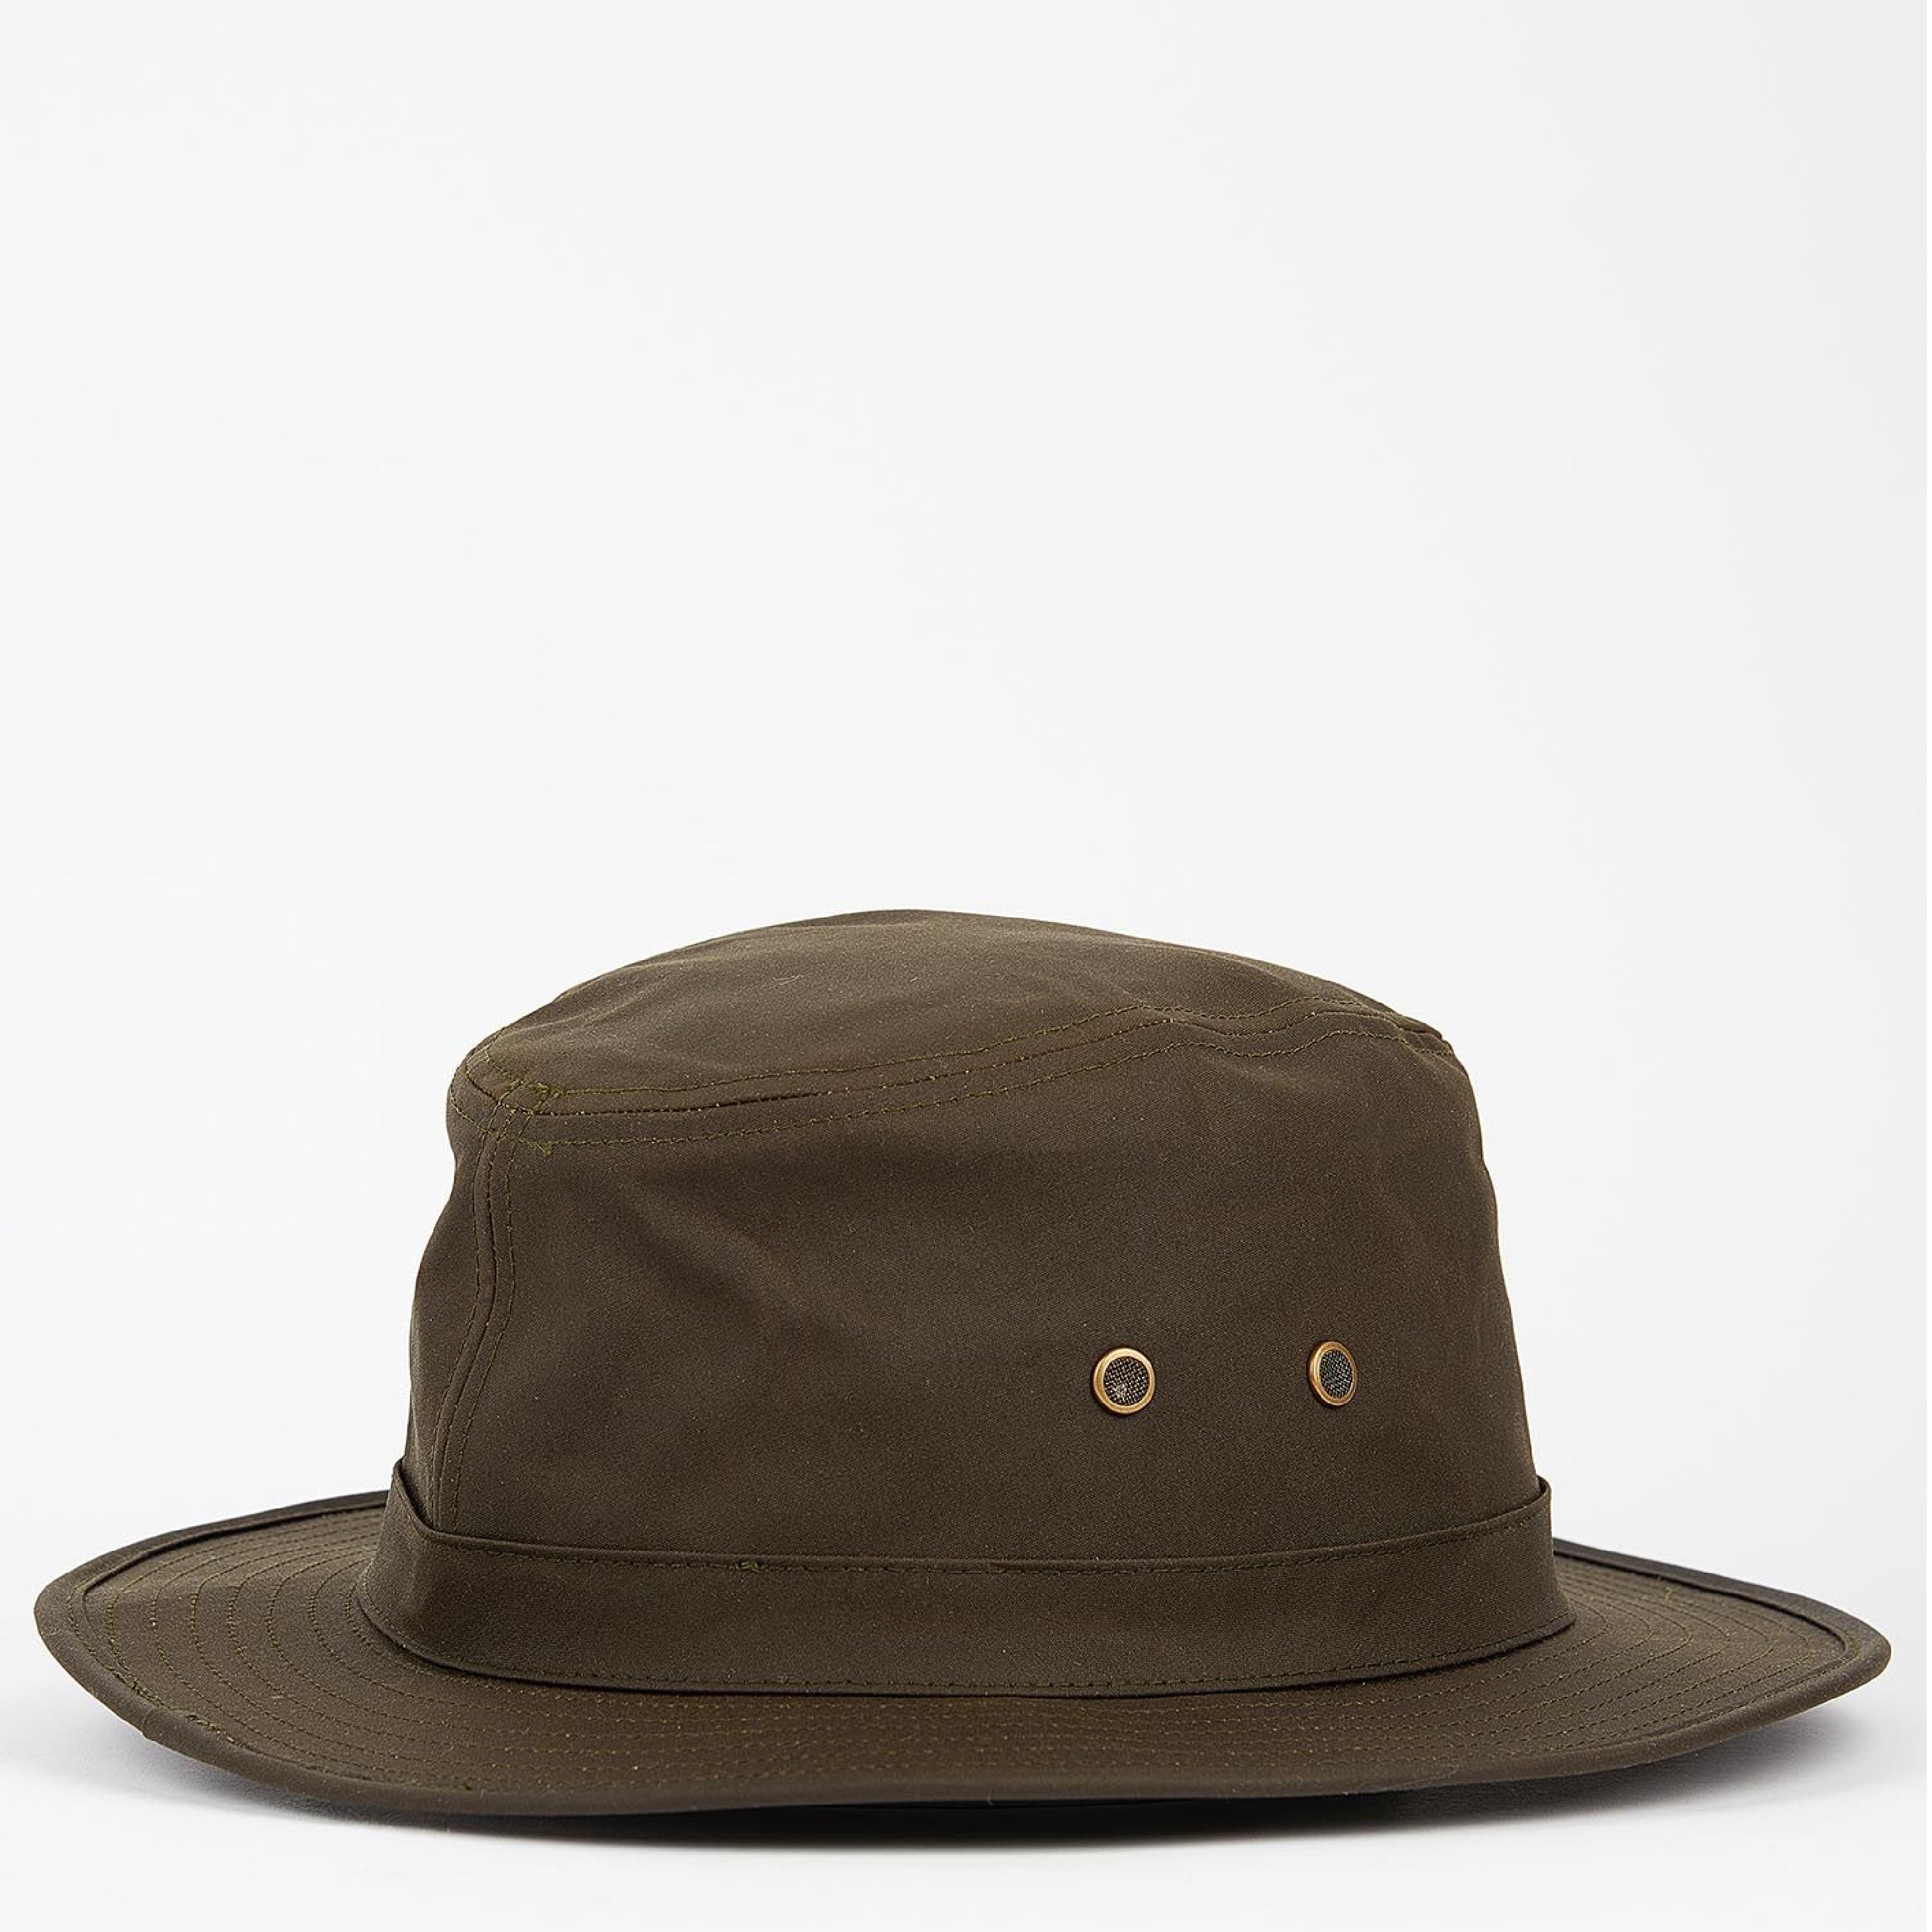 Barbour Wax Safari Hat